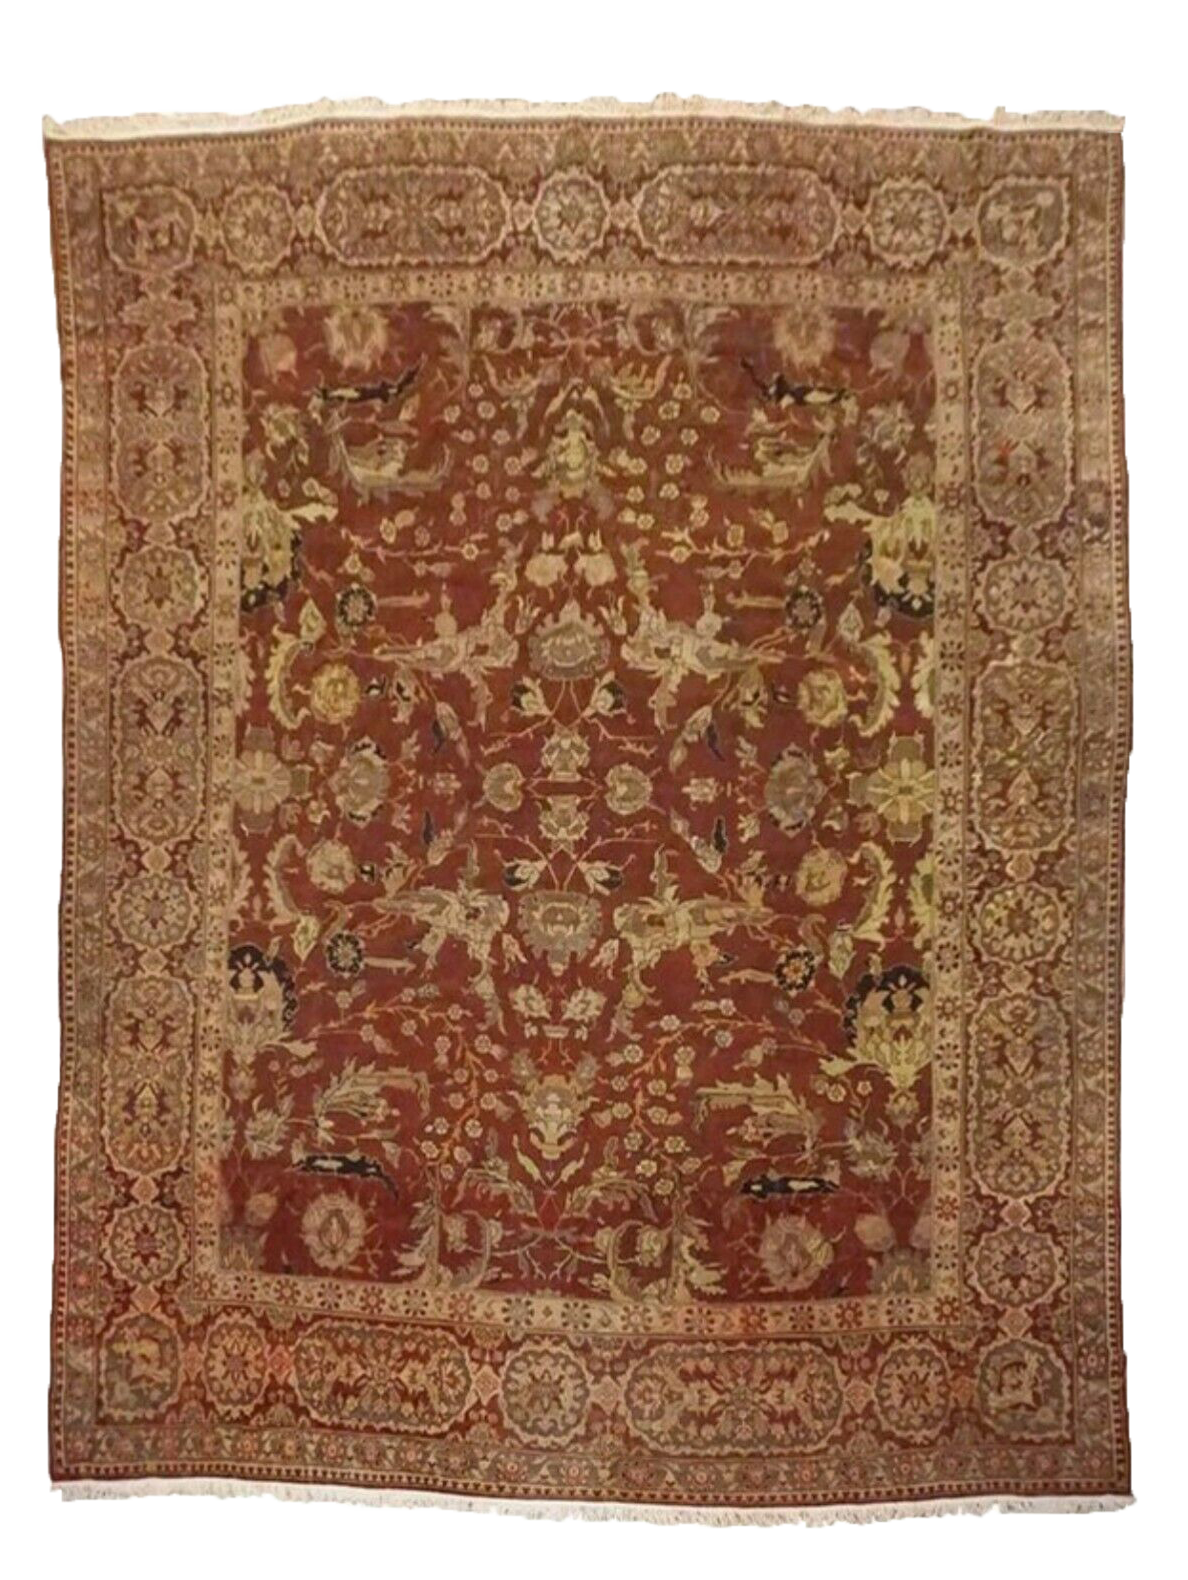 14X15 Antique Indian Amritsar Rug, circa 1890